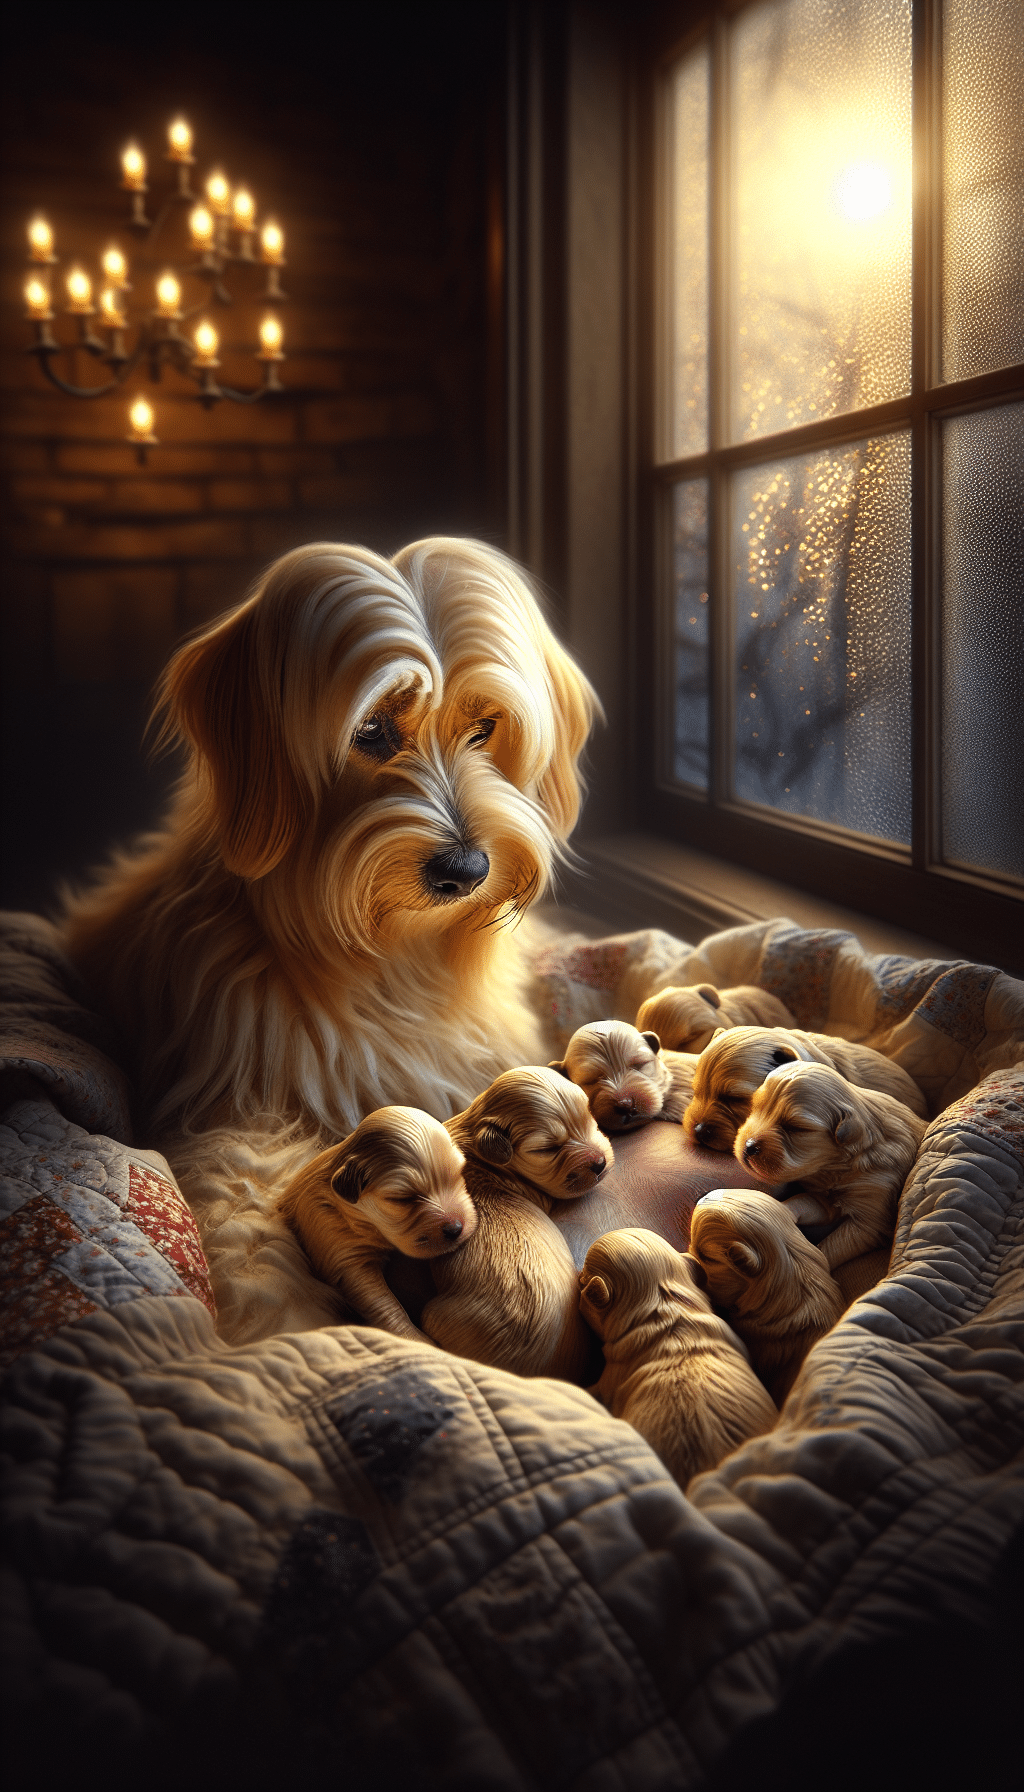 Understanding Puppies in Dreams